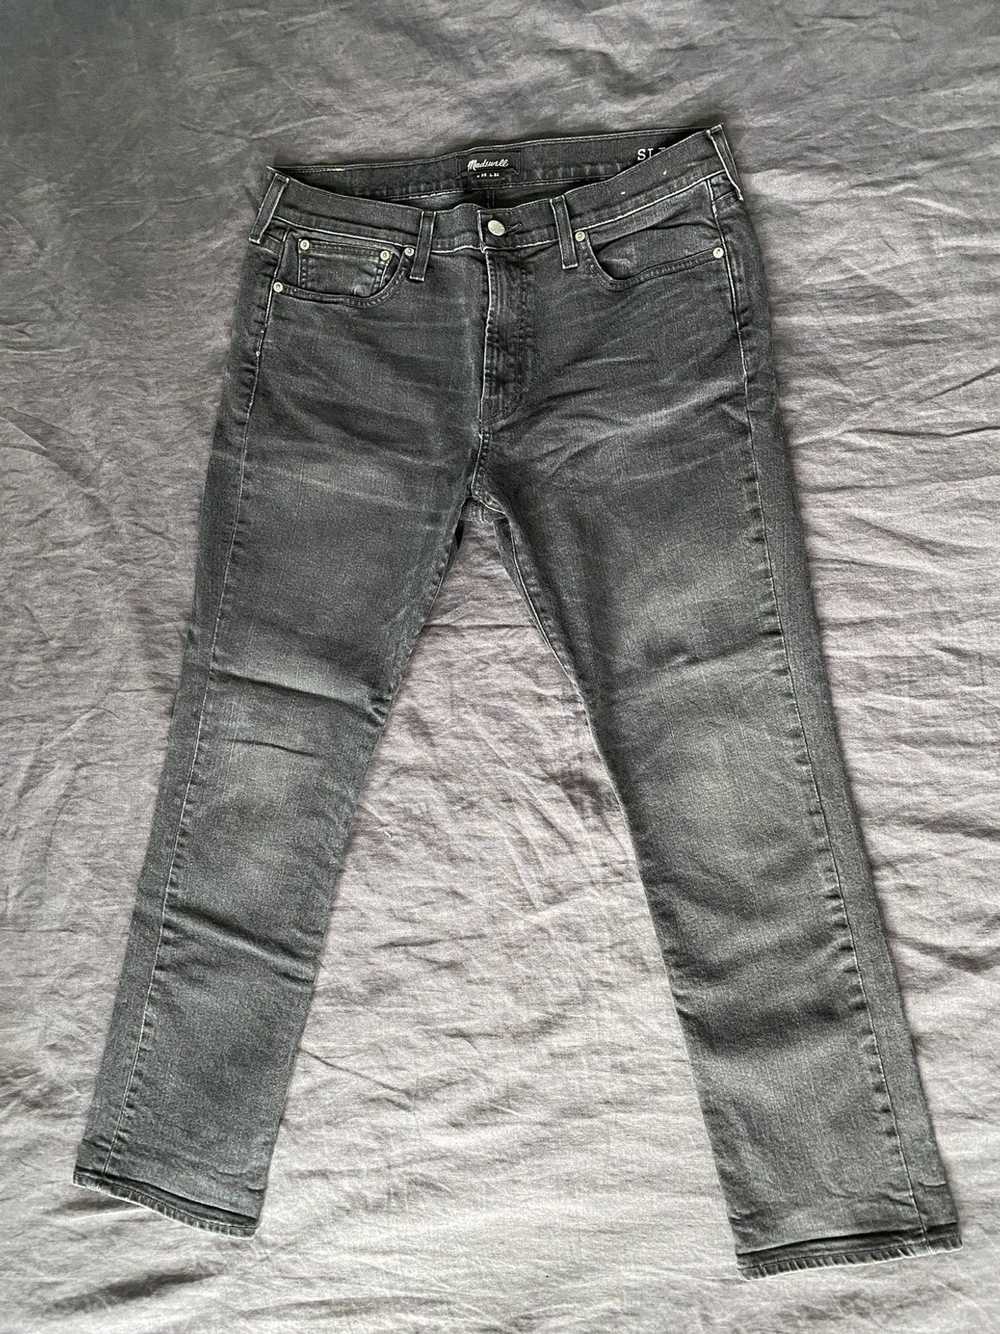 Madewell Black Slim Jeans - 35x32 - image 2